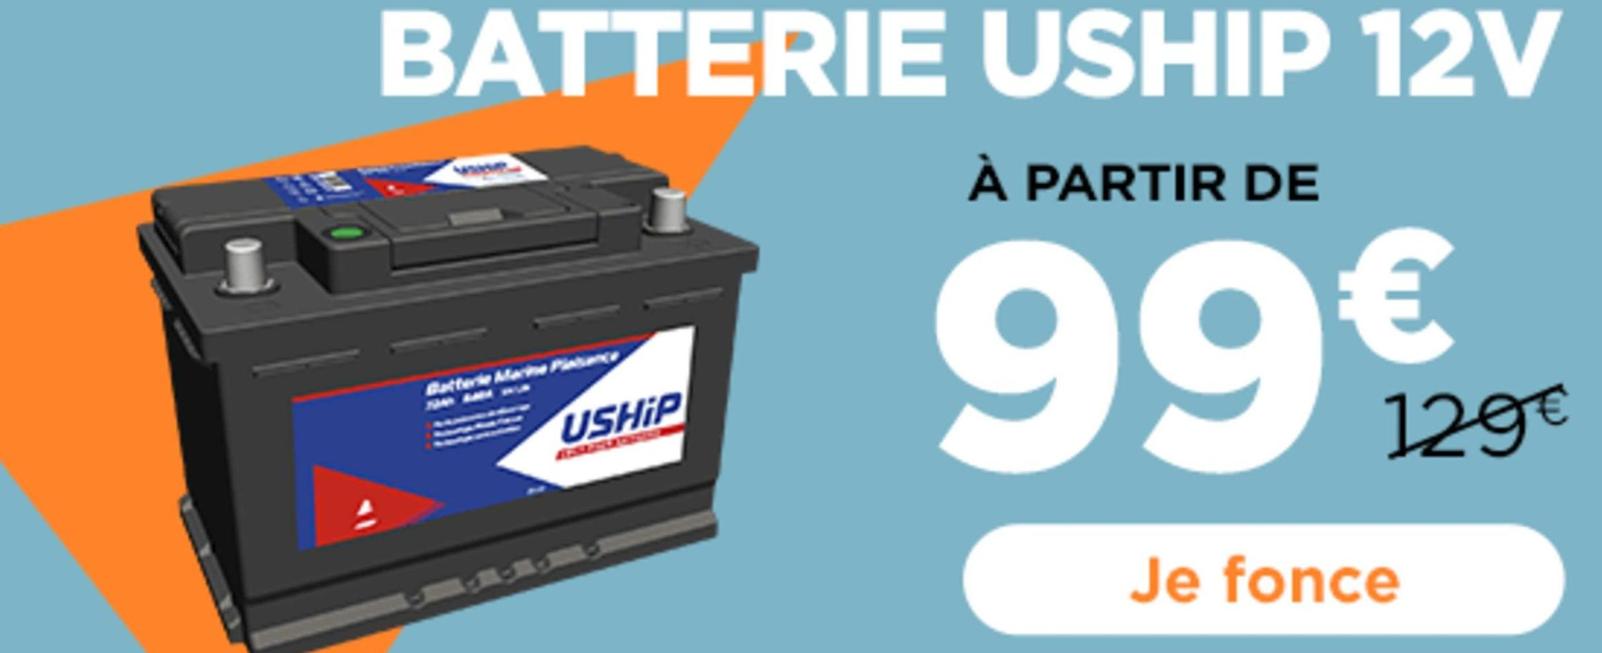 Uship - Batterie  offre à 99€ sur Uship